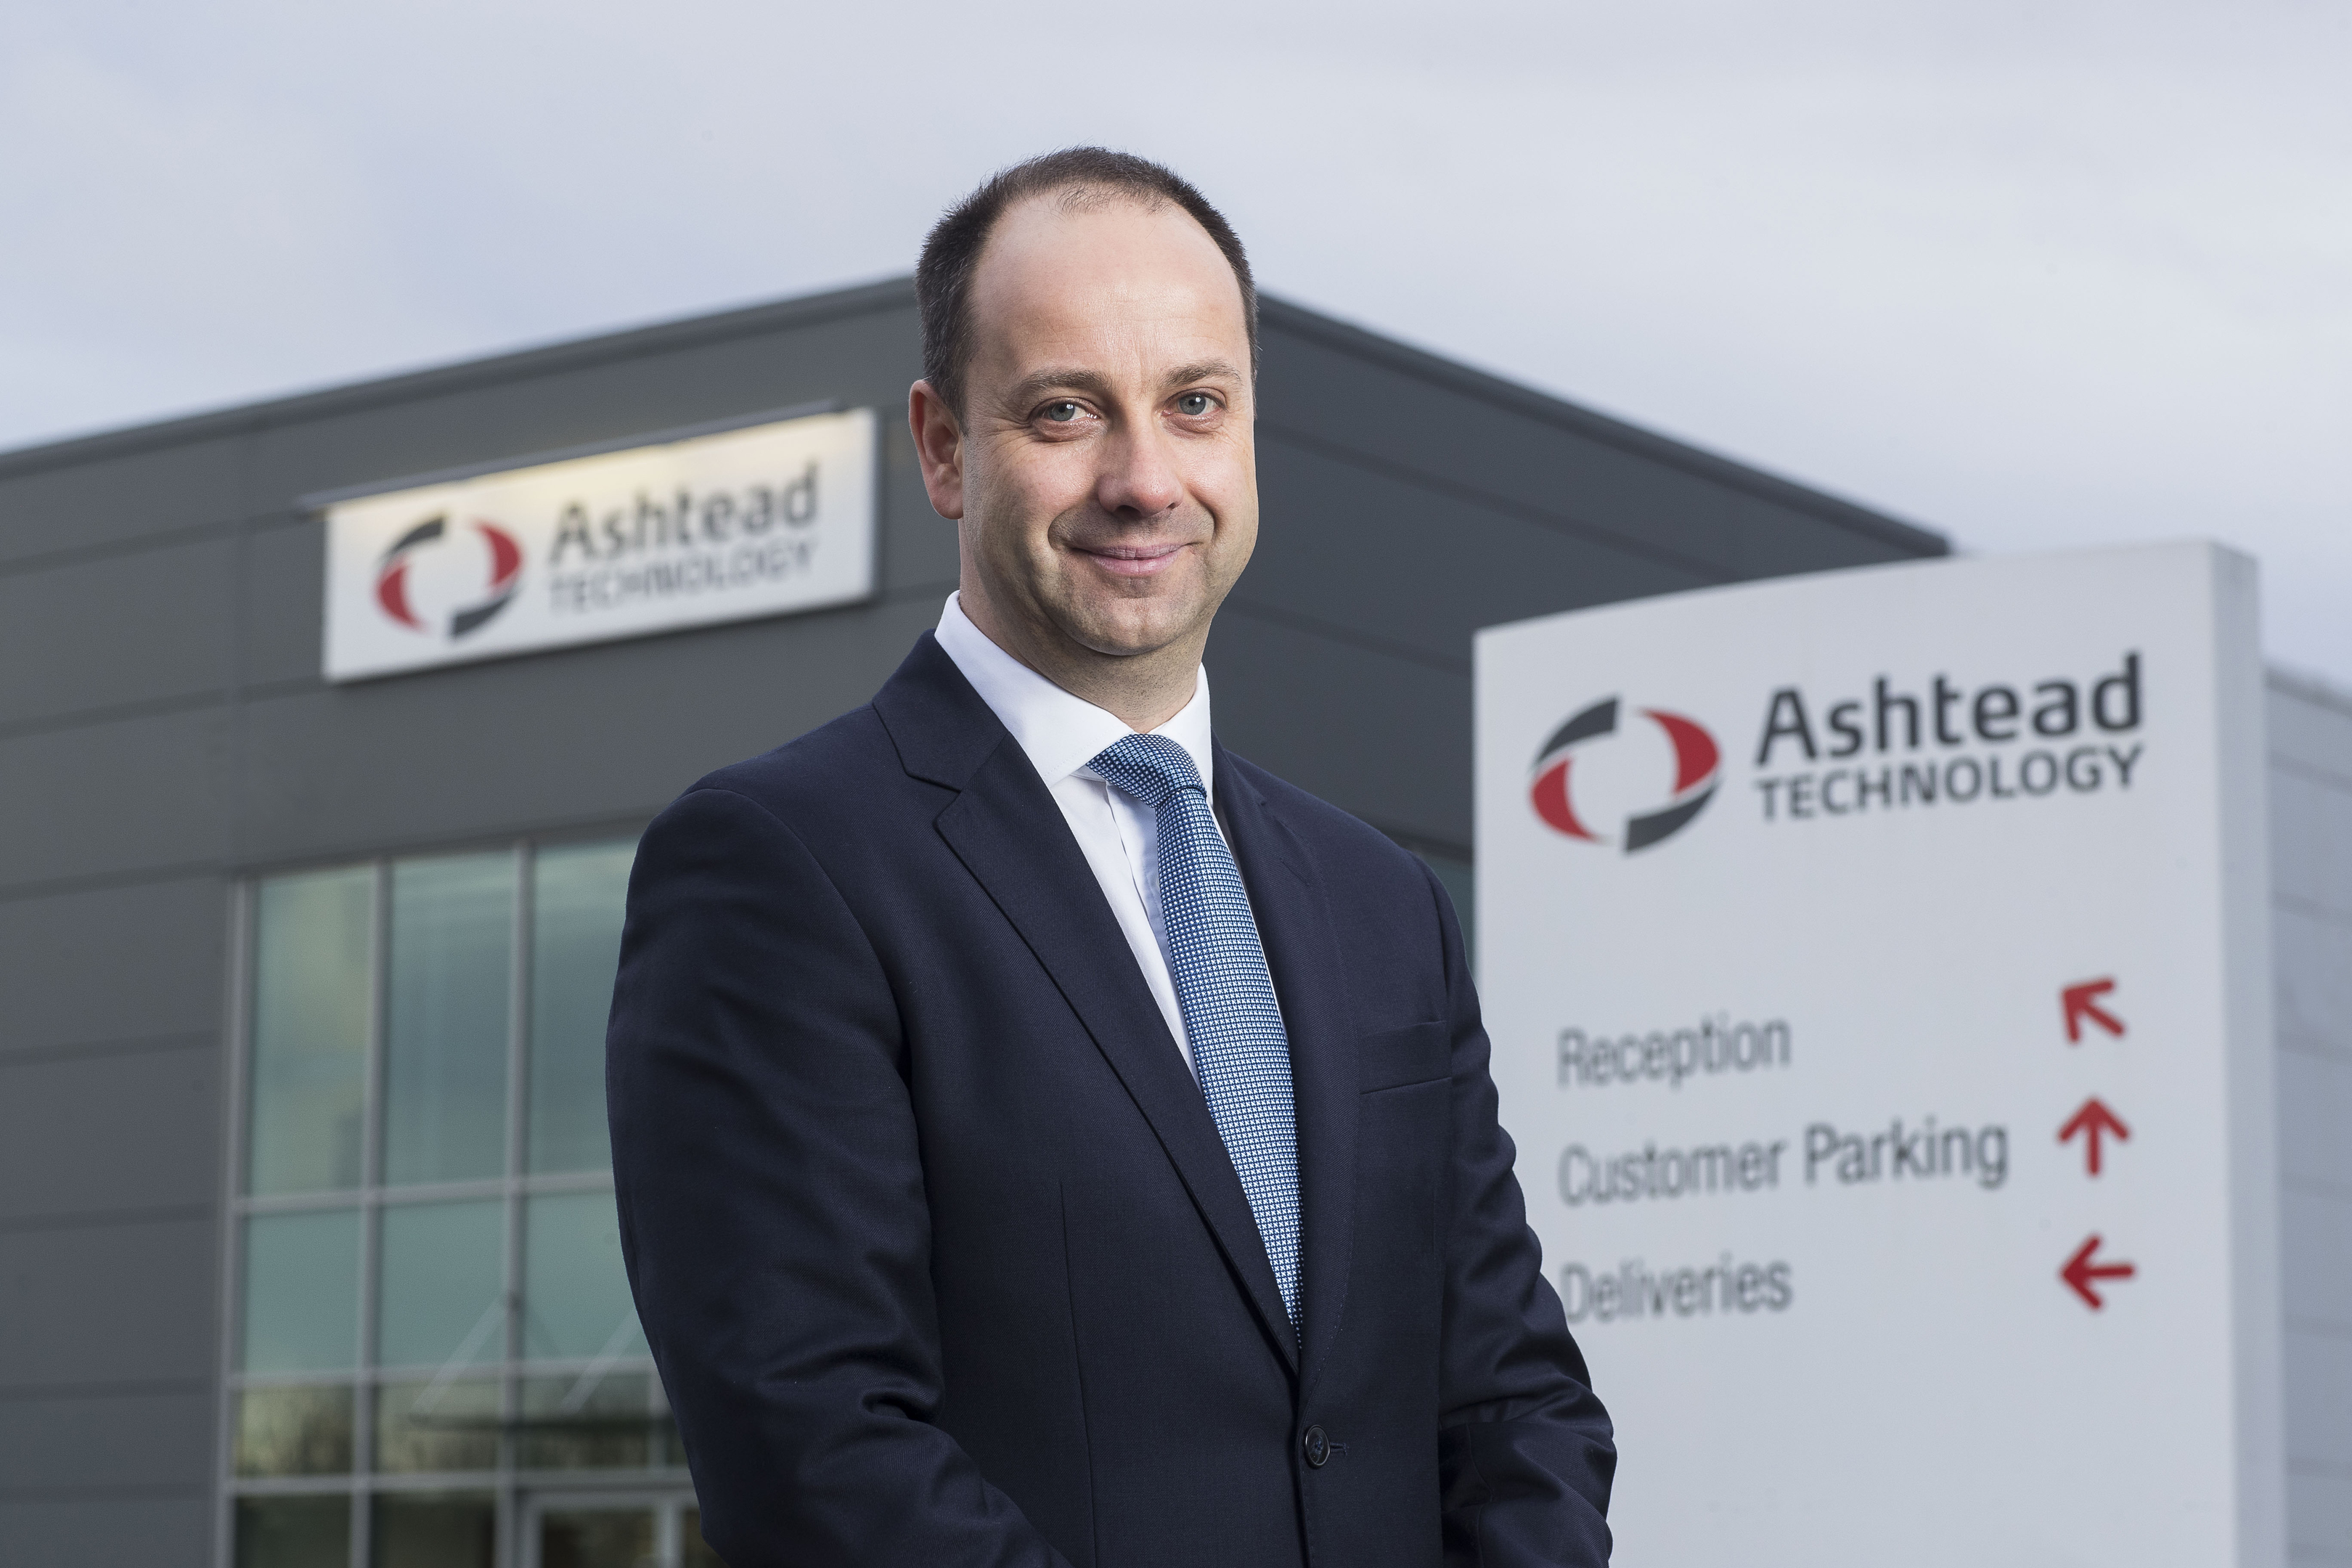 Ashtead Technology CEO Allan Pirie